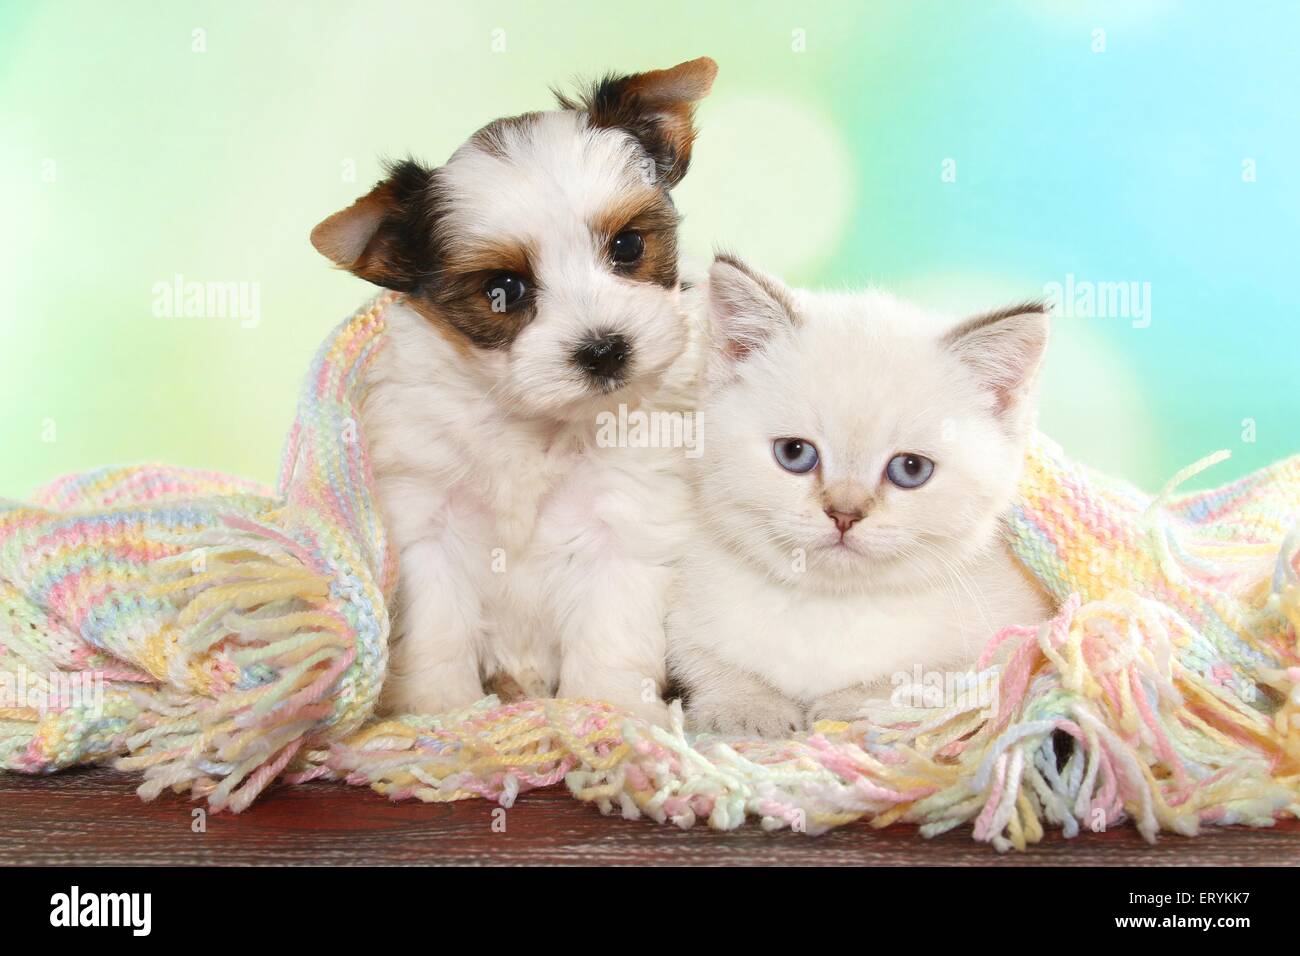 British Shorthair Kitten and Biewer Terrier Puppy Stock Photo